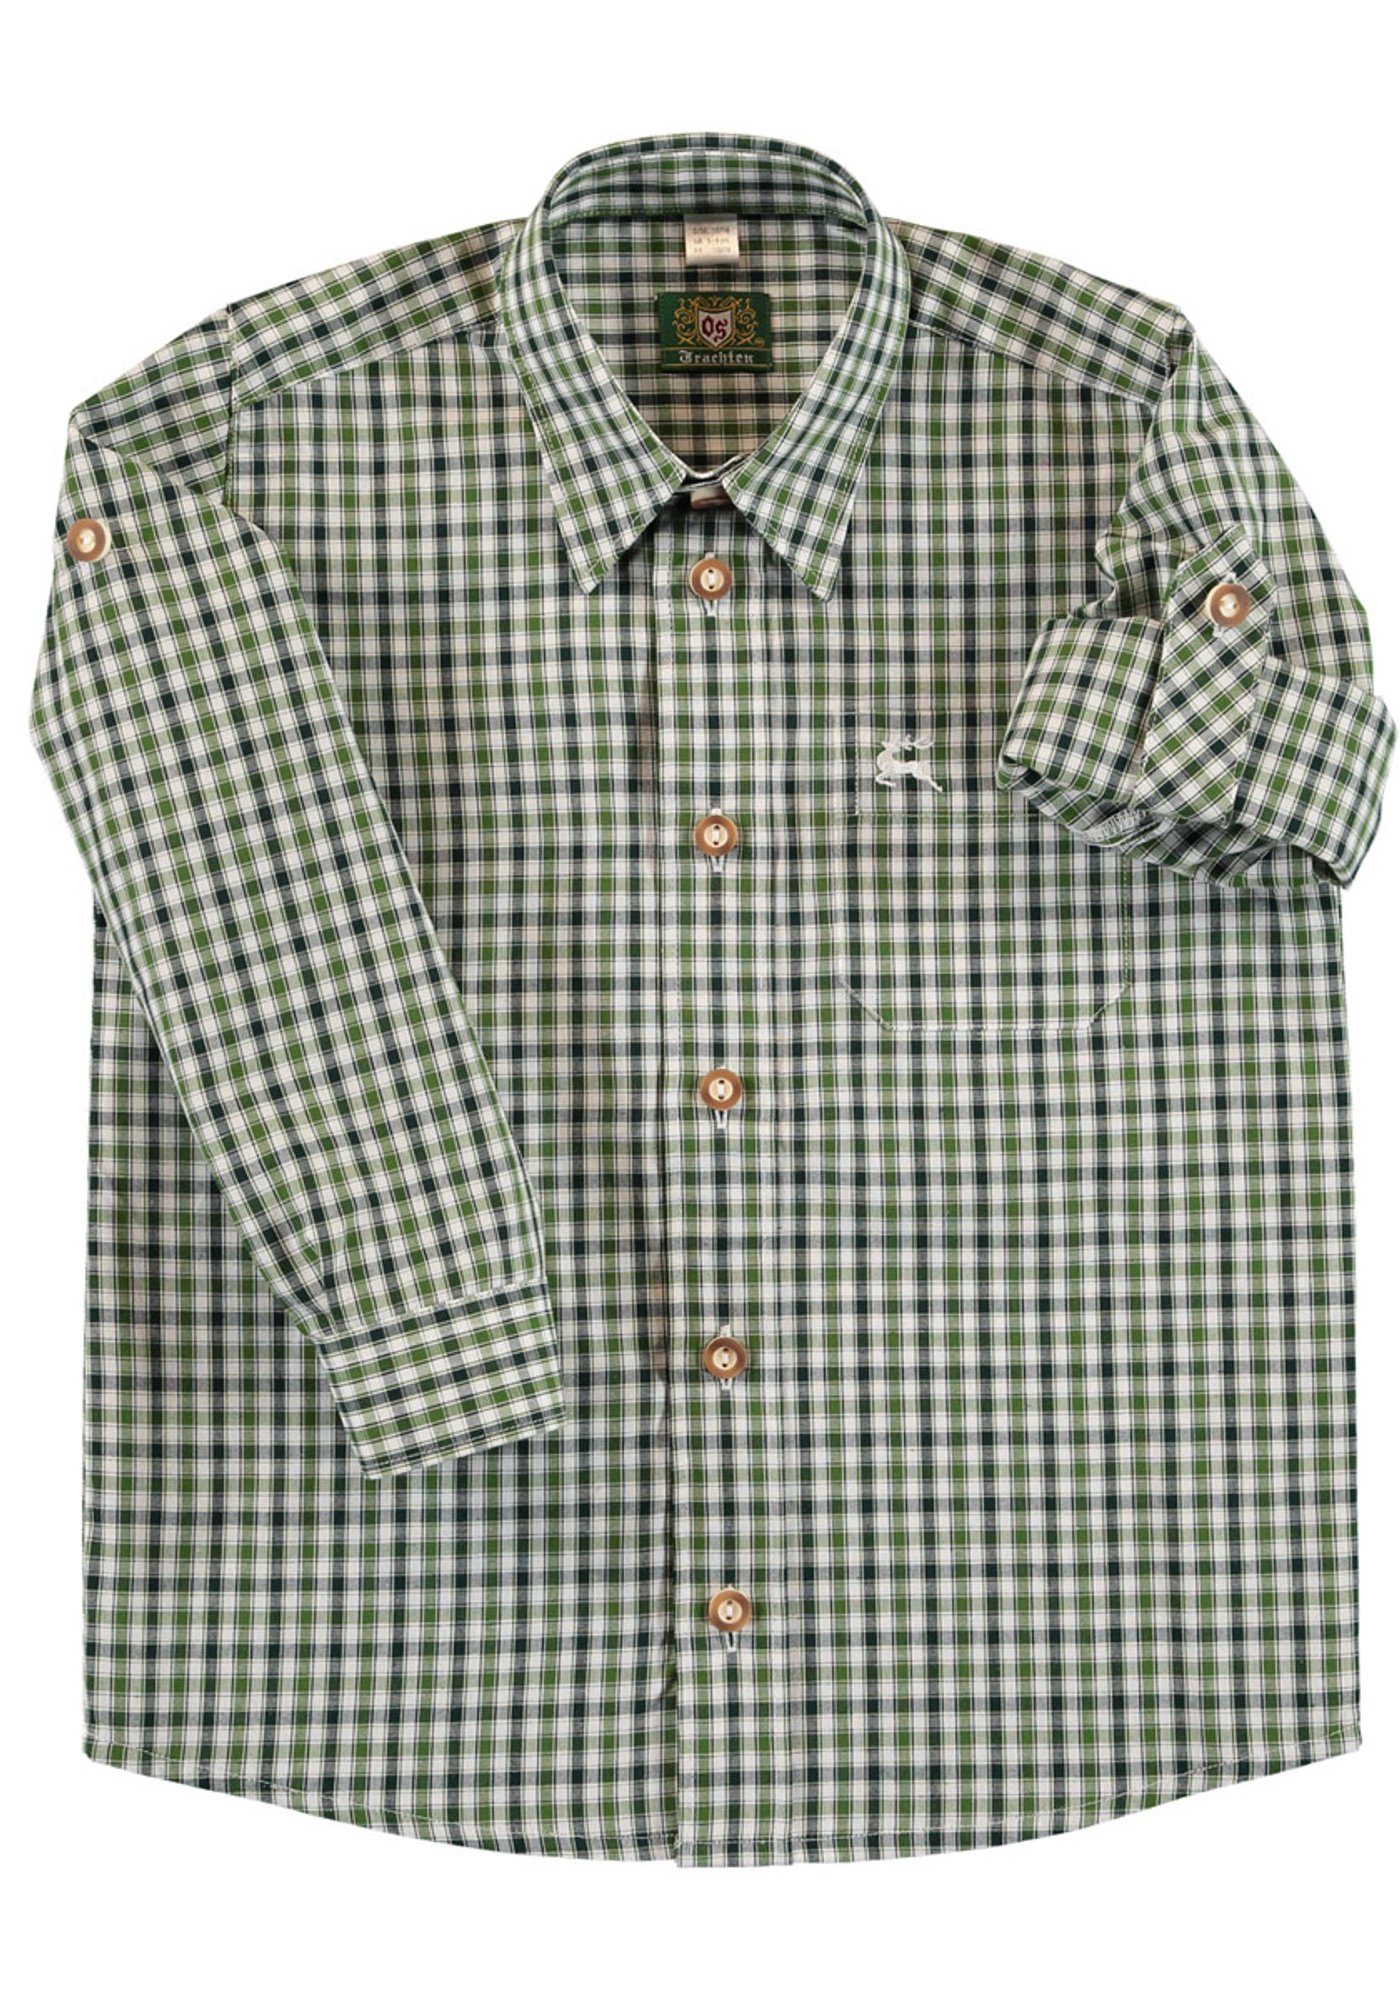 OS-Trachten Trachtenhemd Skimli Langarm Jungen Hemd mit Hirsch-Stickerei auf der Brusttasche dunkelgrün